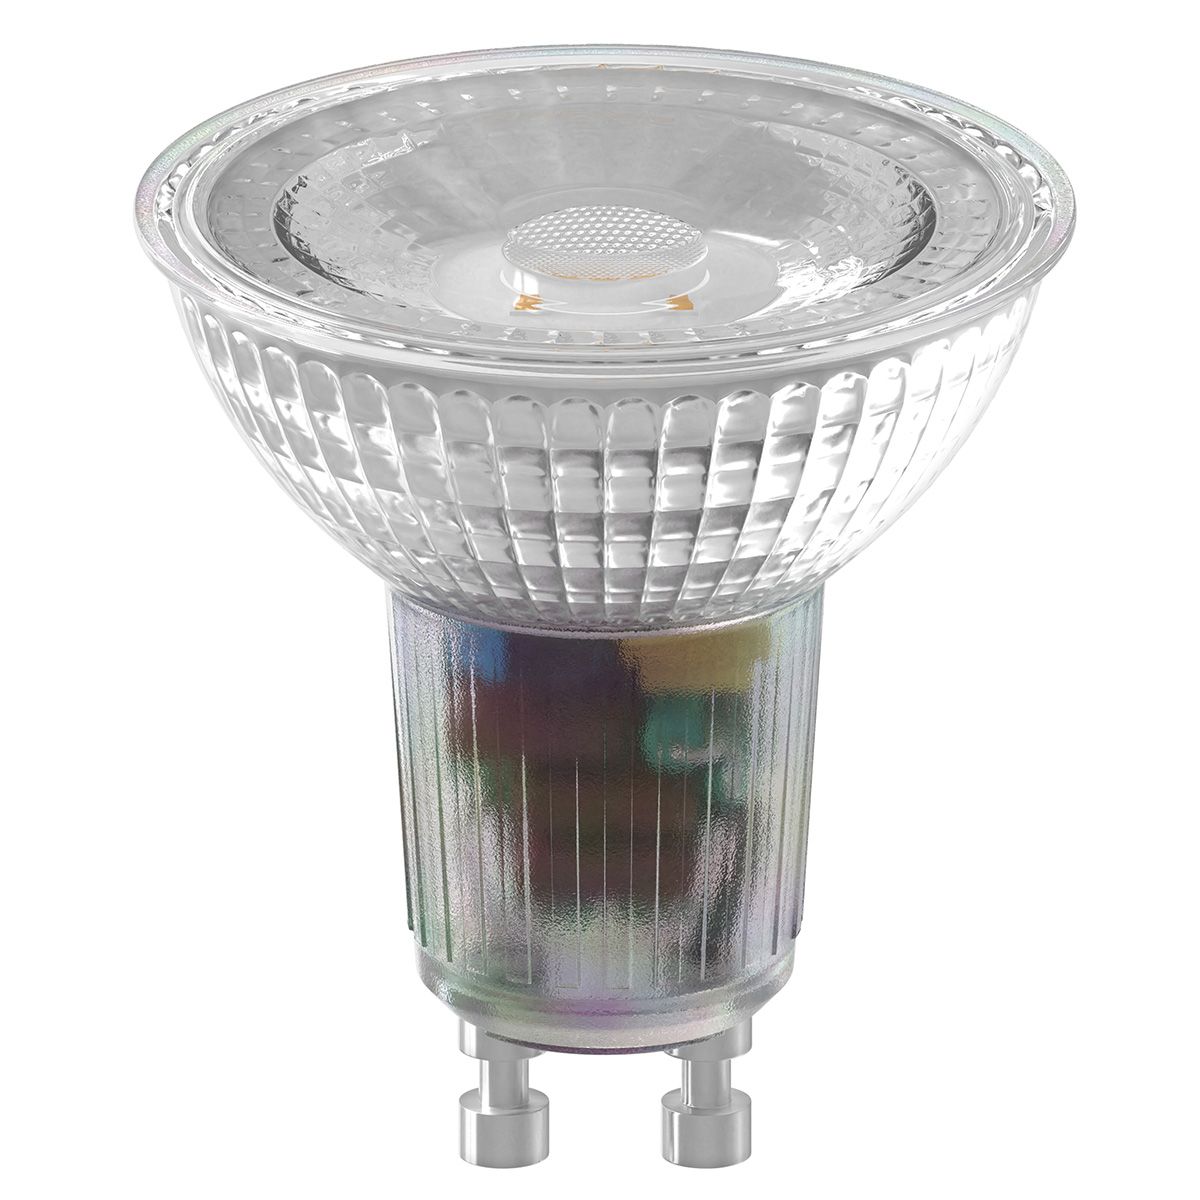 Ampoule LED Ledvion GU10 - 4.5W - 2700K - 345 Lumen - Verre